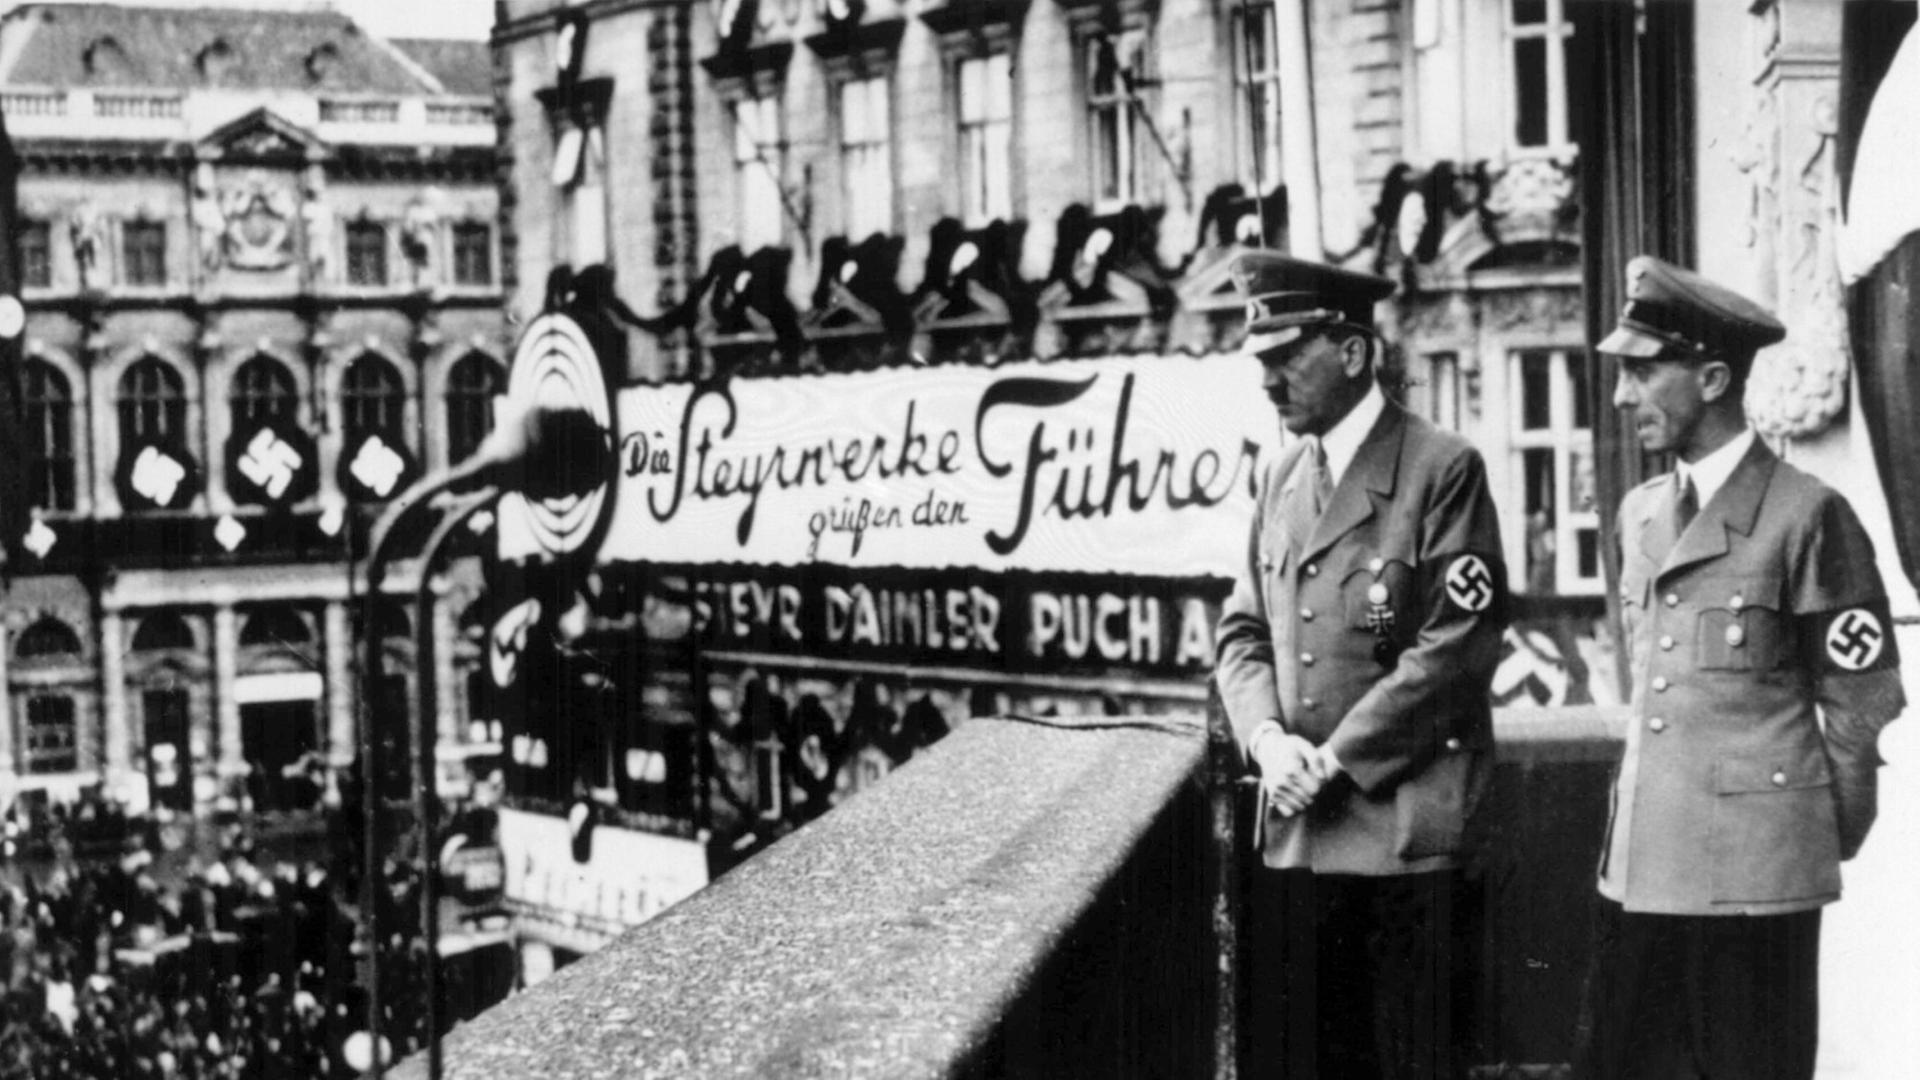  Adolf Hitler und Joseph Goebbels am 14. März 1938 auf einem Balkon in Wien